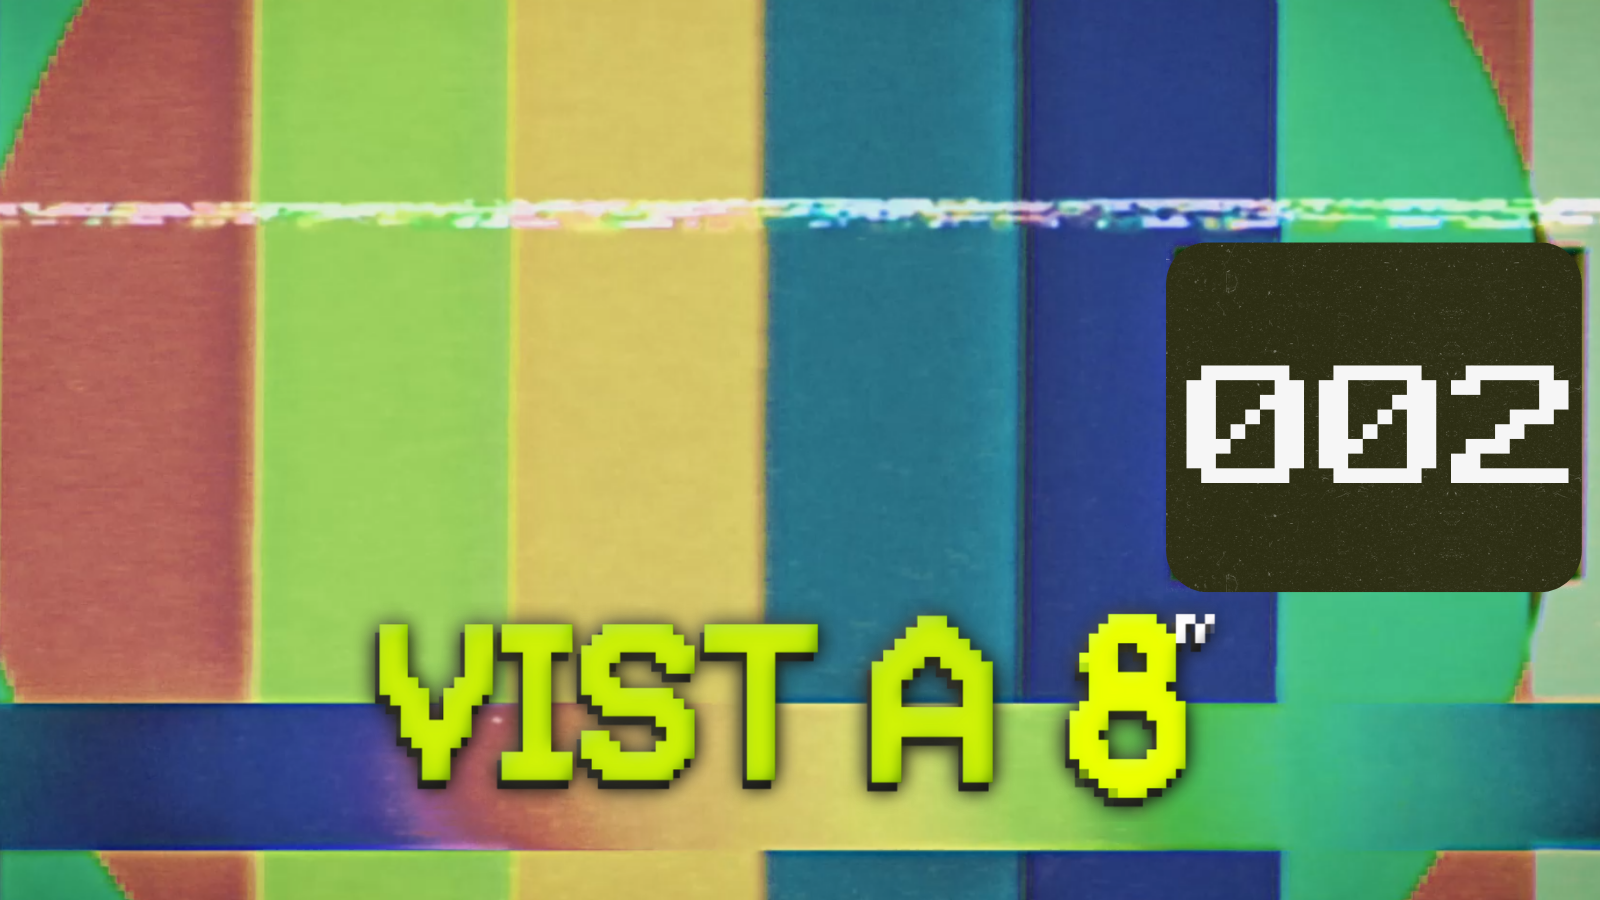 VIST A 8TV - EPISODI 2